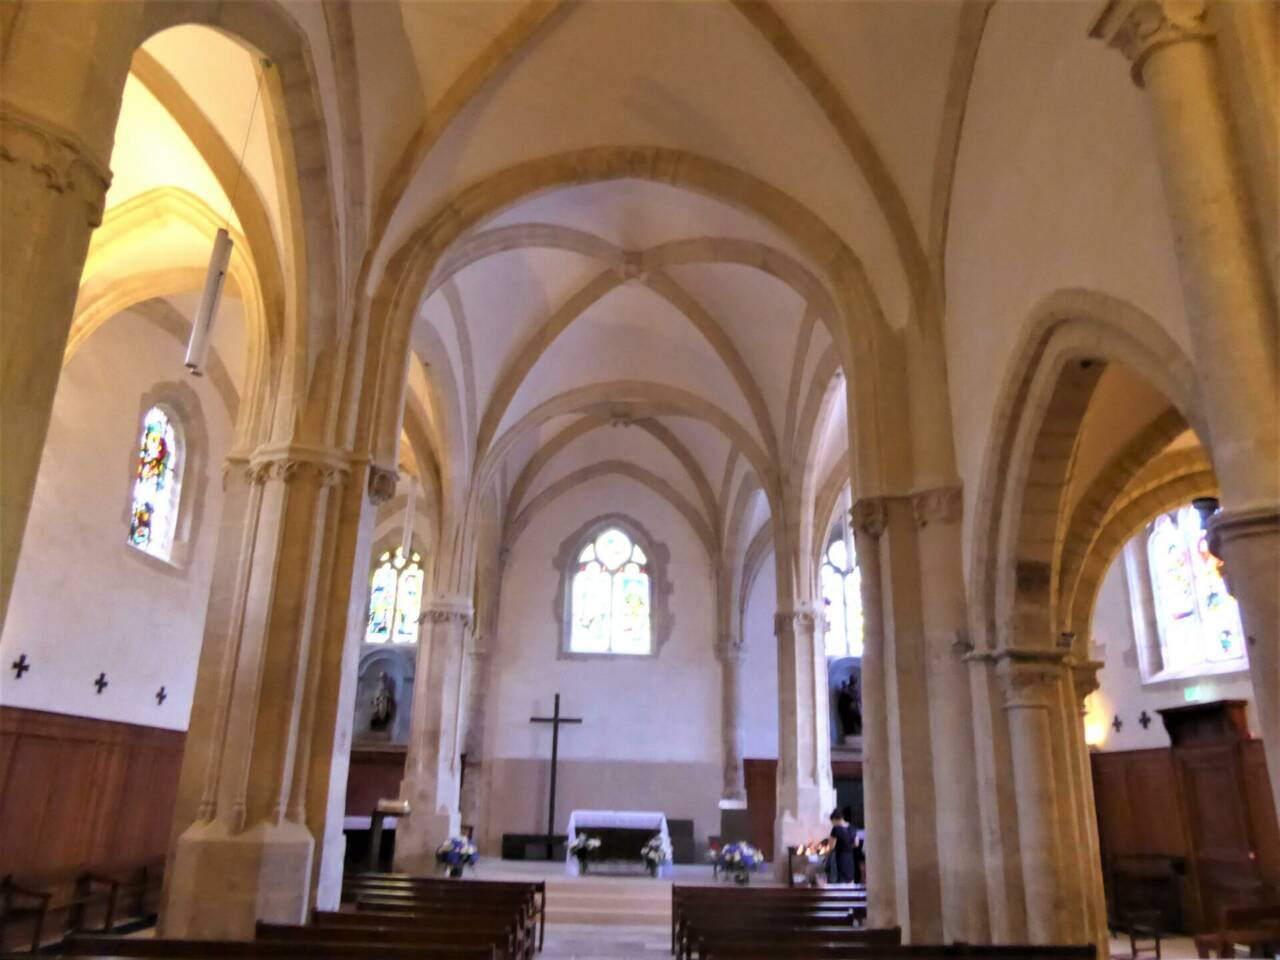 Visite guidée de l'église saint Germain de Charonne